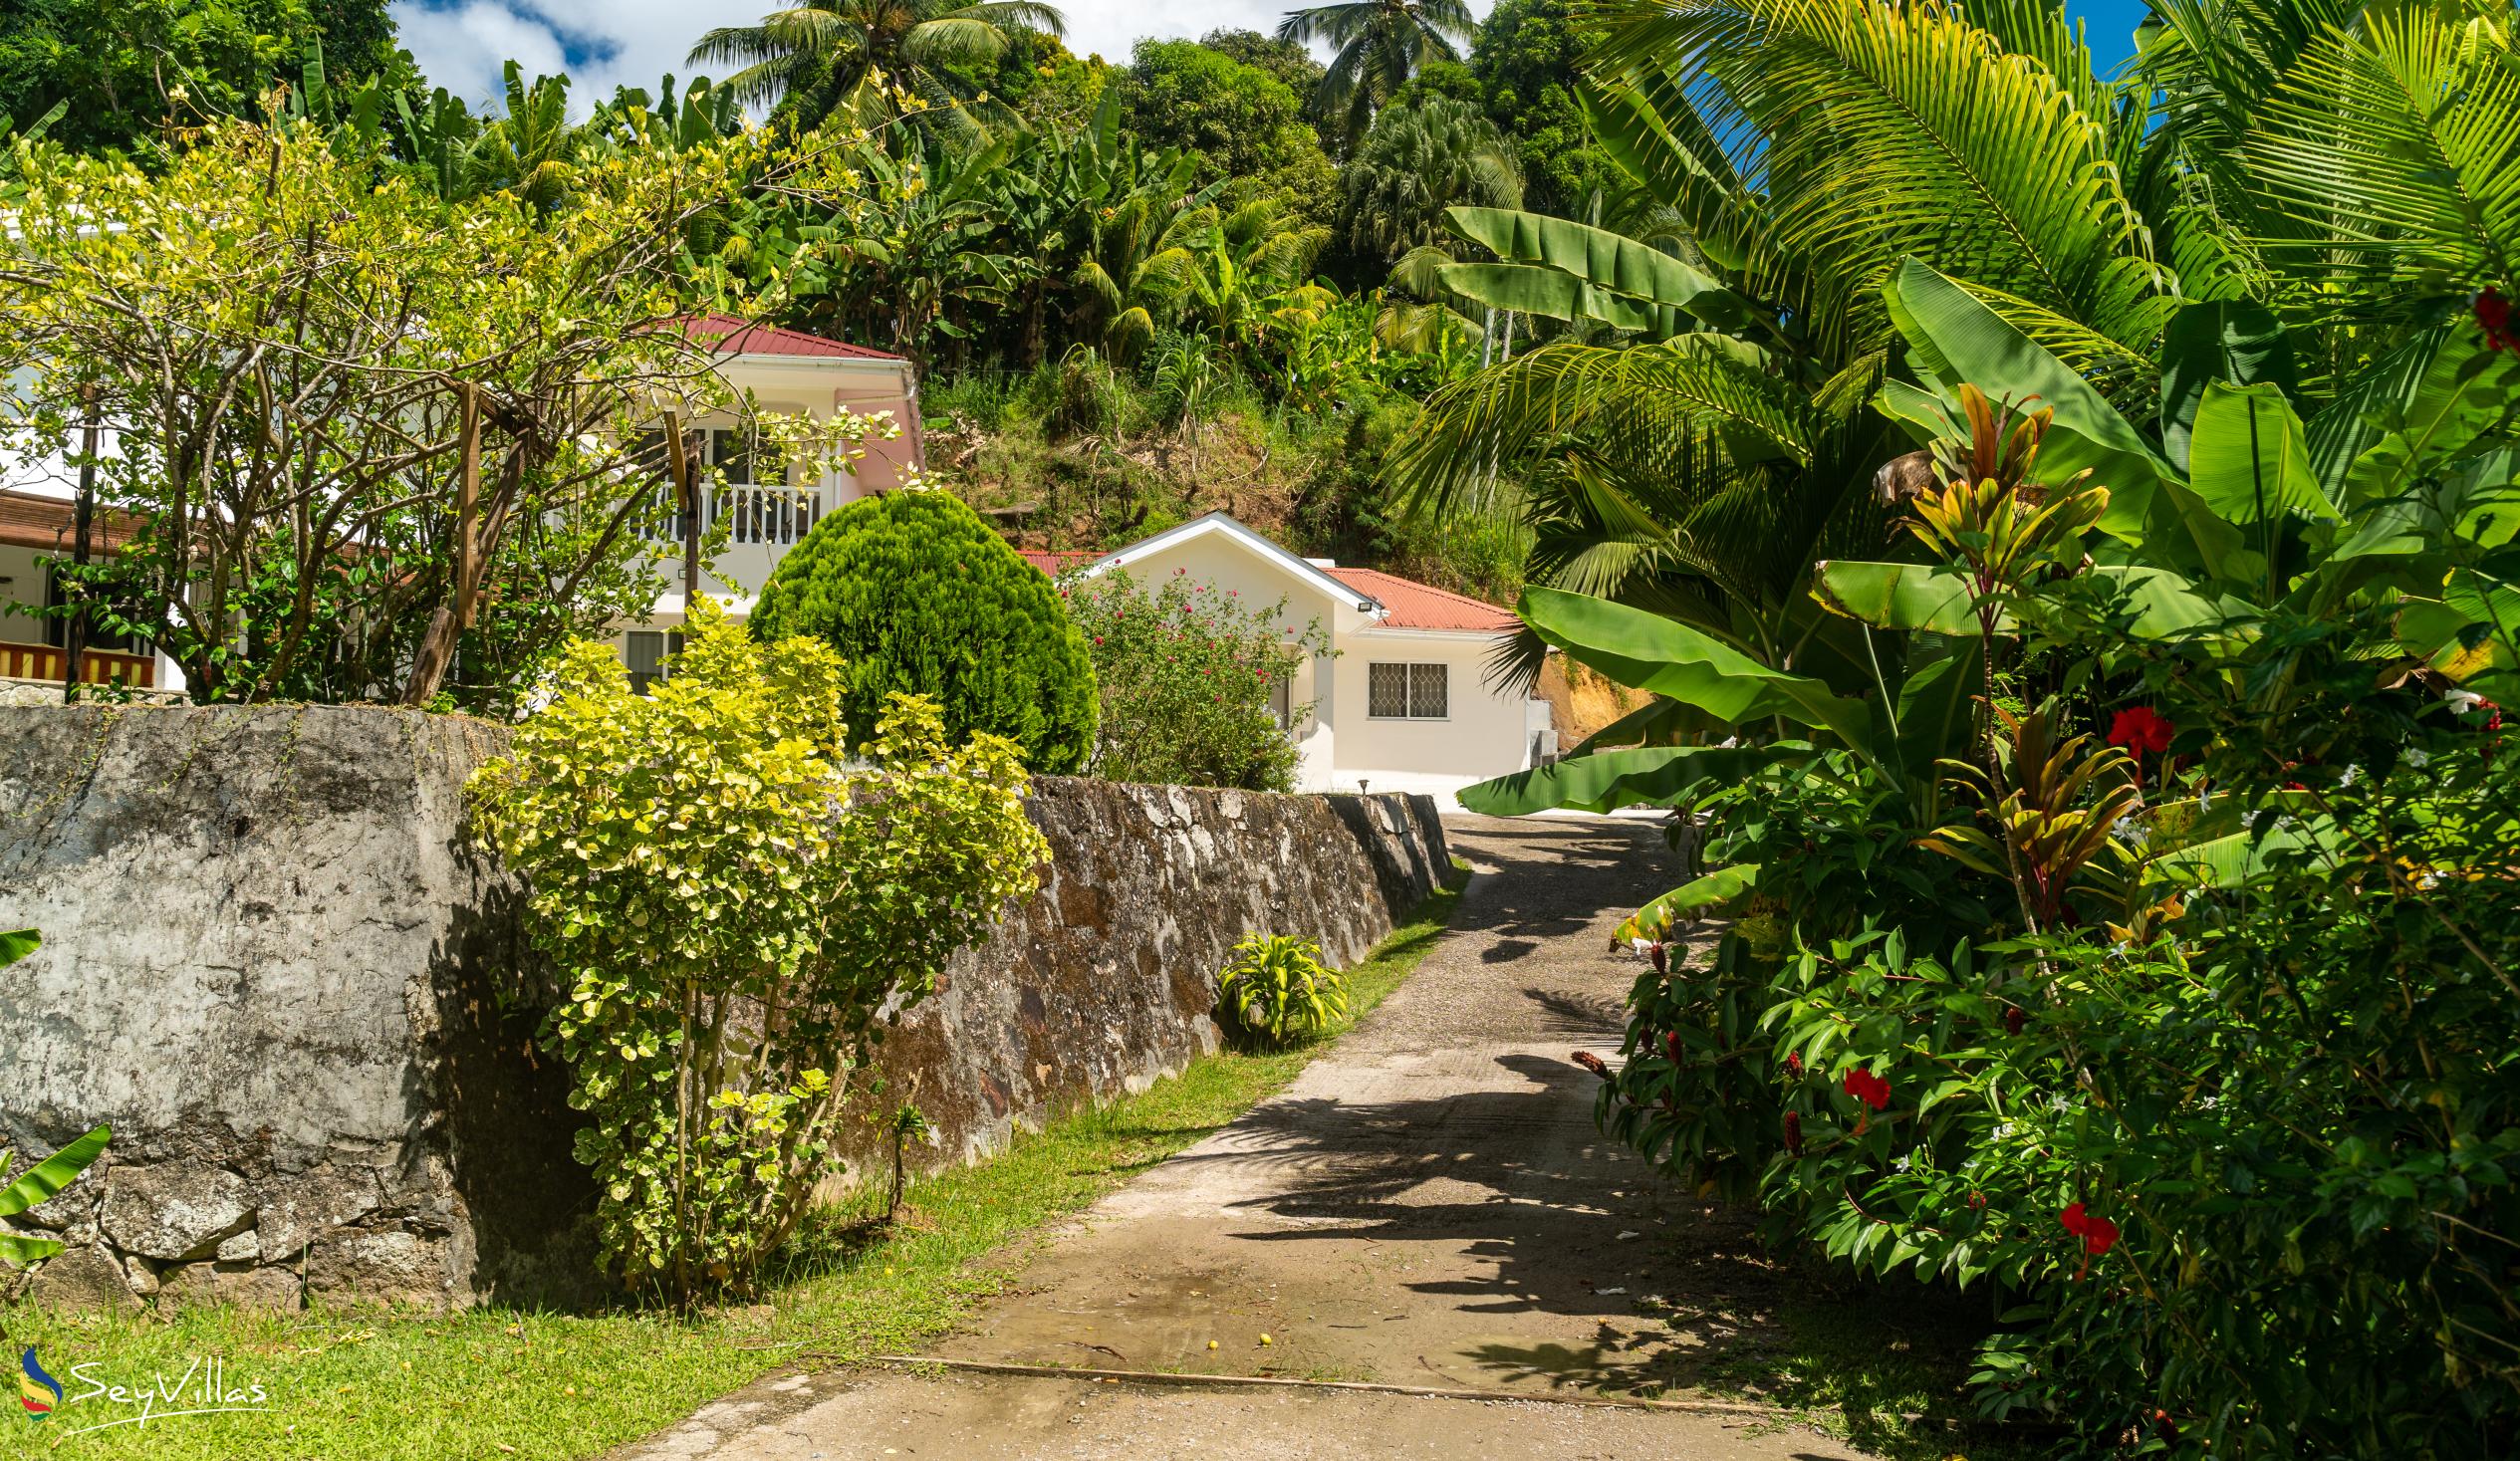 Foto 12: Paul's Residence - Aussenbereich - Mahé (Seychellen)